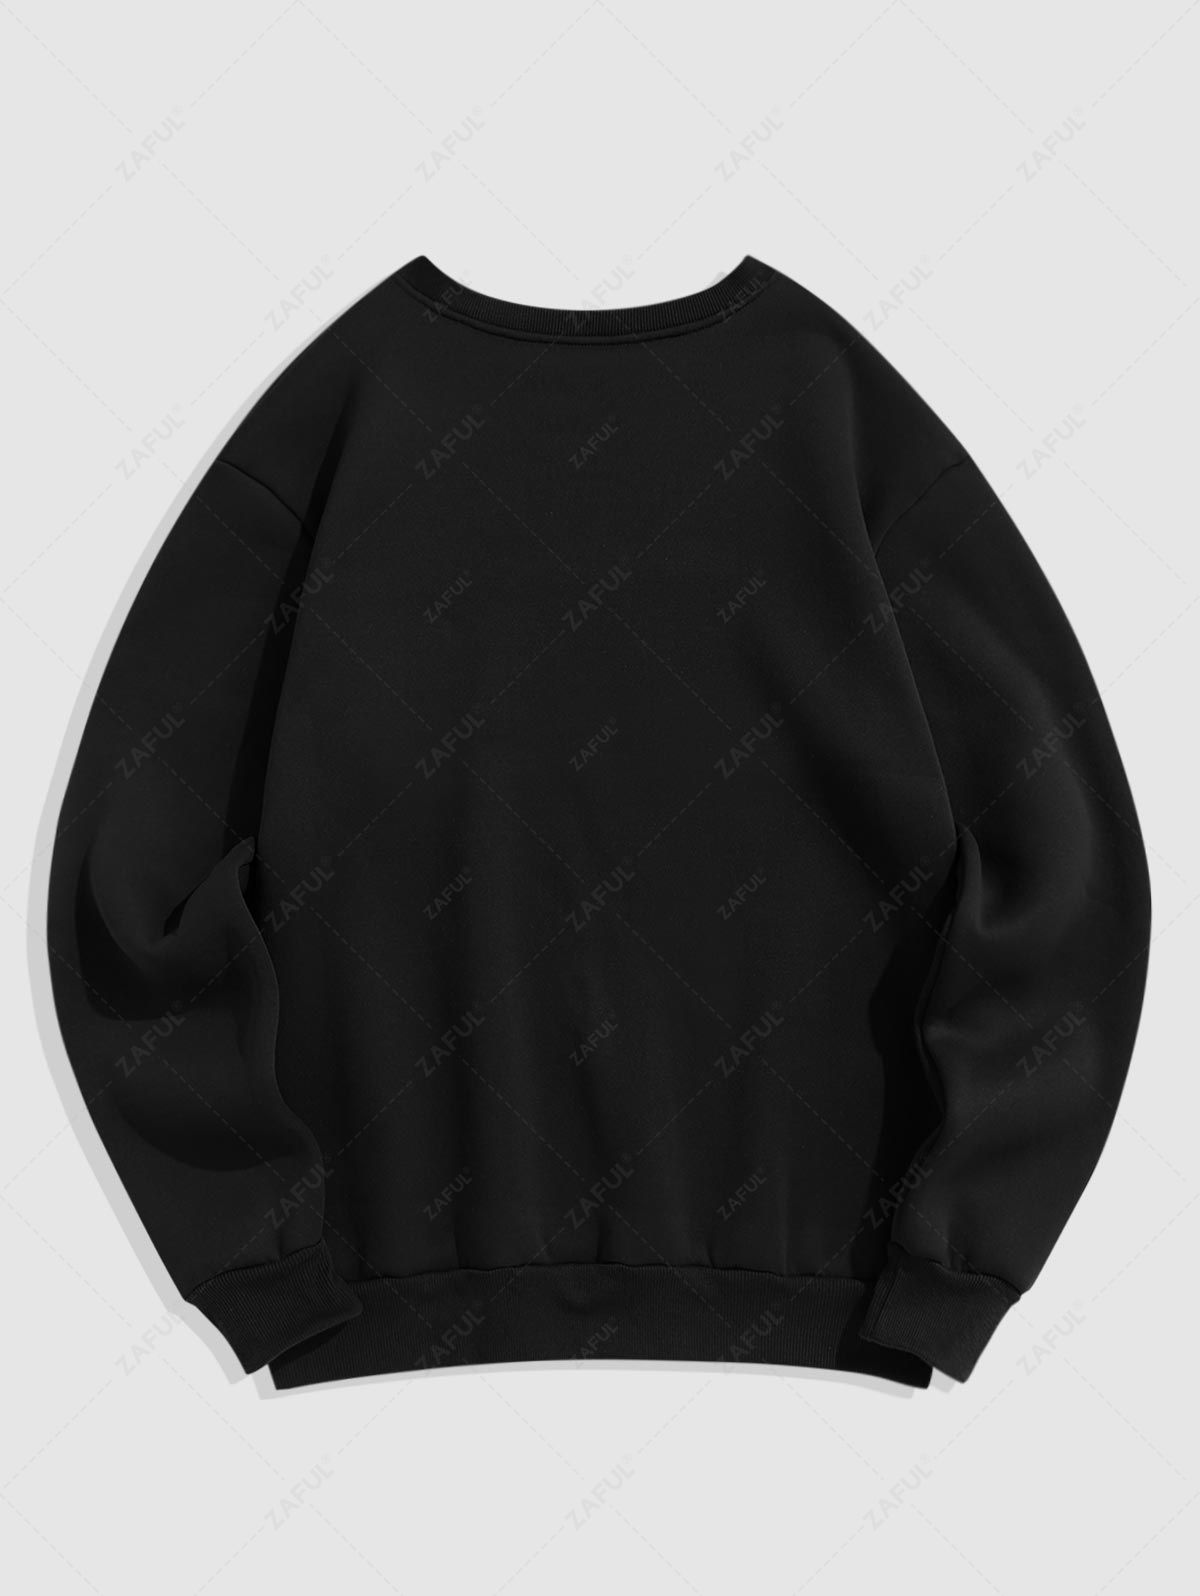  Men's PARIS Bear Graphic Pattern Fleece-lined Crew Neck Pullover Sweatshirt